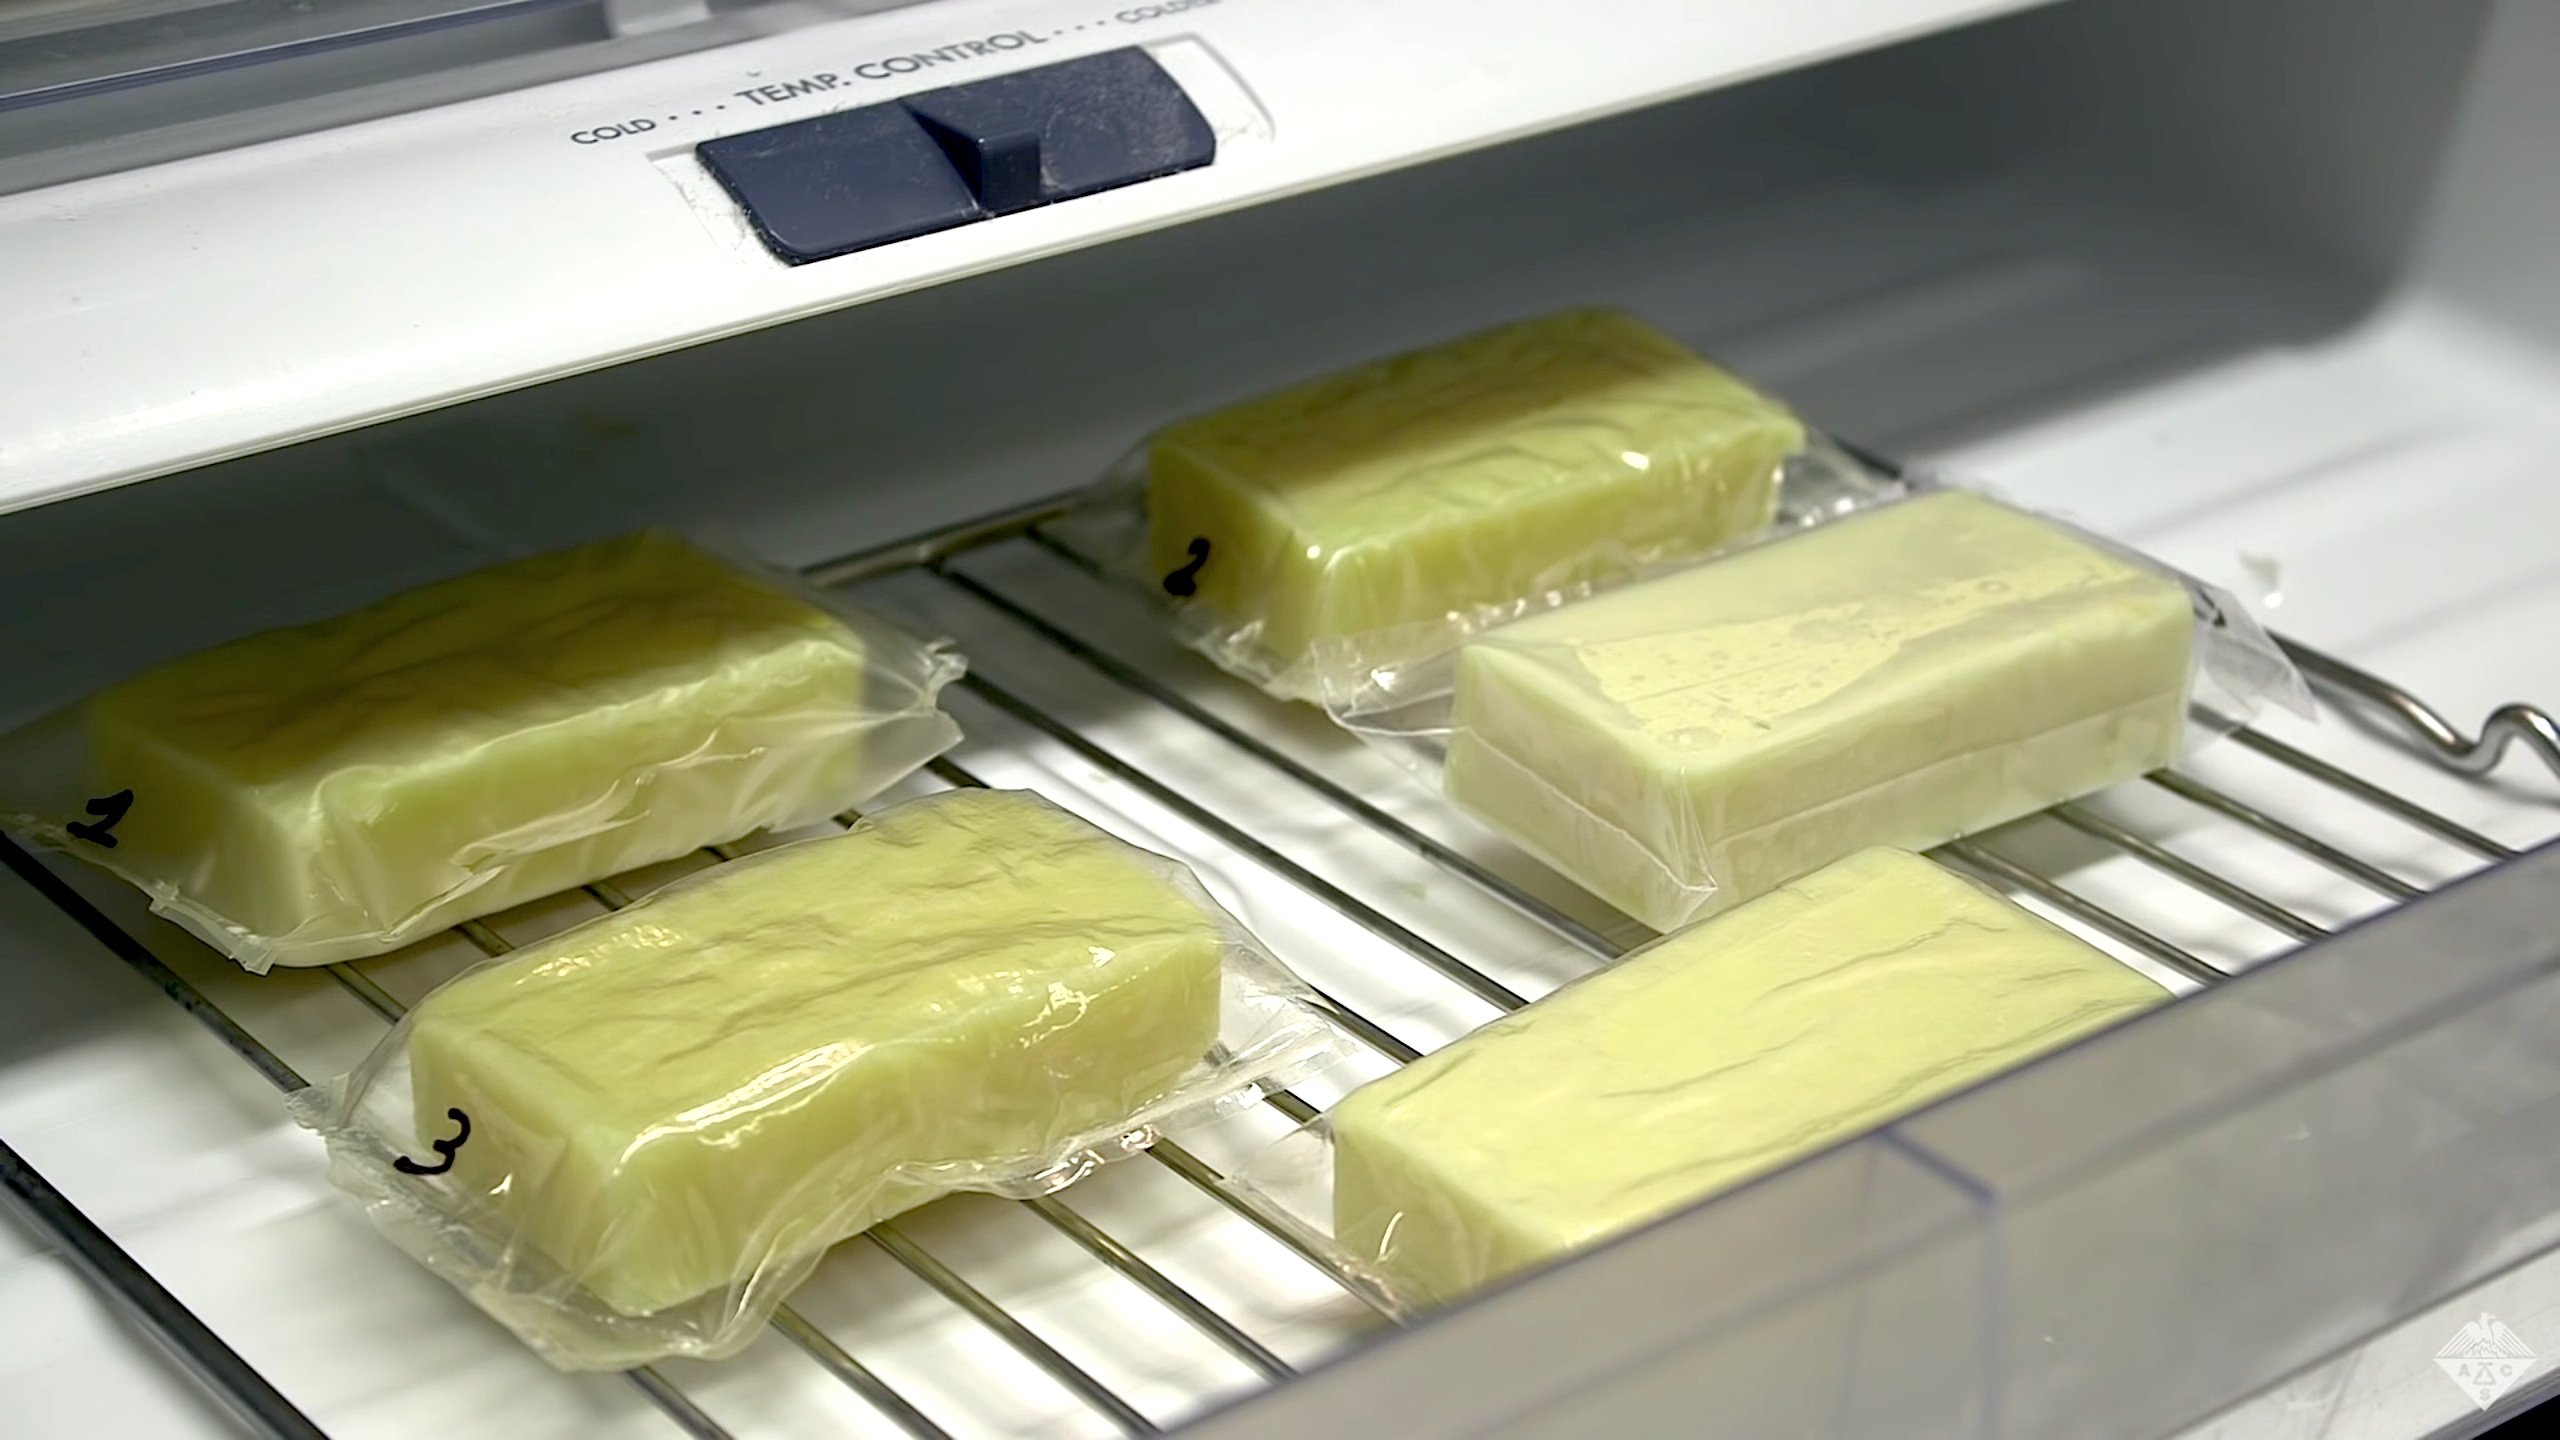 Káº¿t quáº£ hÃ¬nh áº£nh cho edible food packaging made from milk proteins